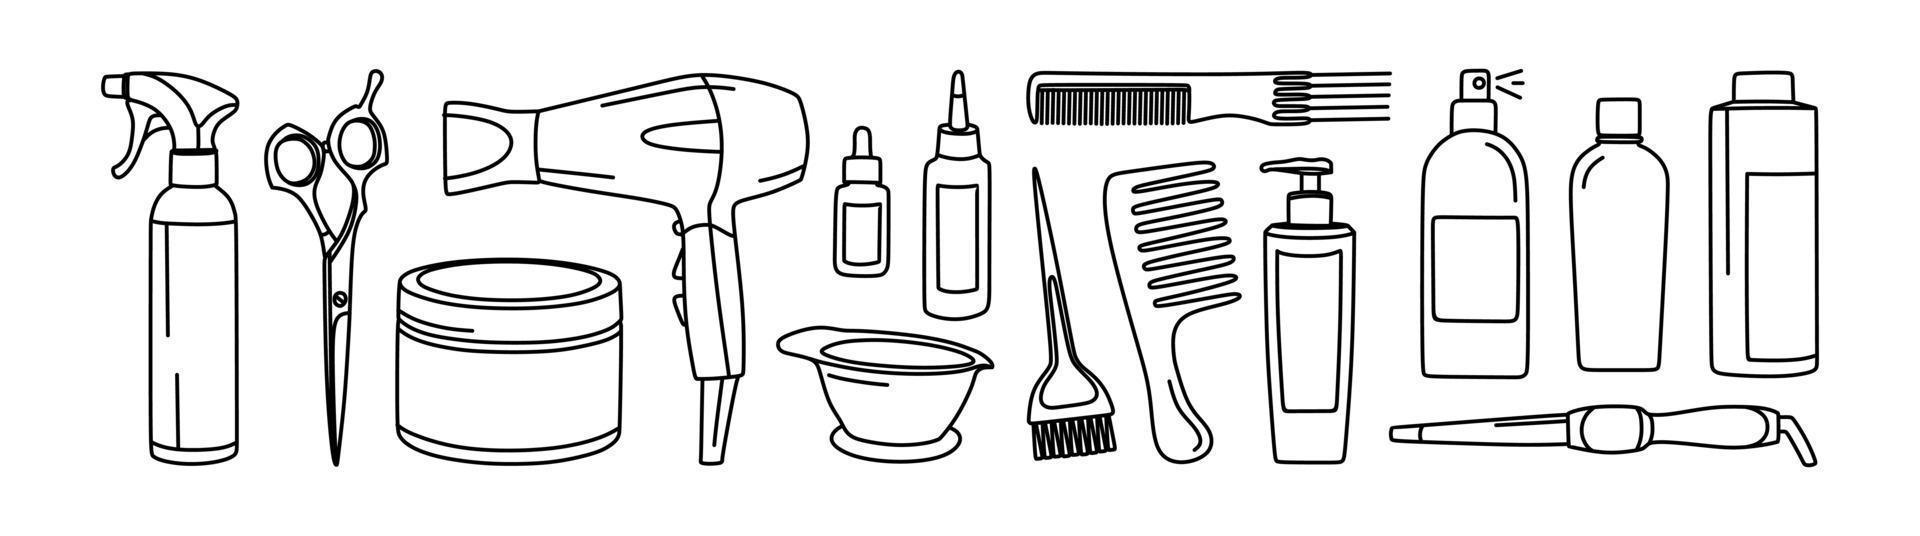 prodotti per la cura dei capelli. un set di cosmetici e oggetti. illustrazione vettoriale in stile doodle.